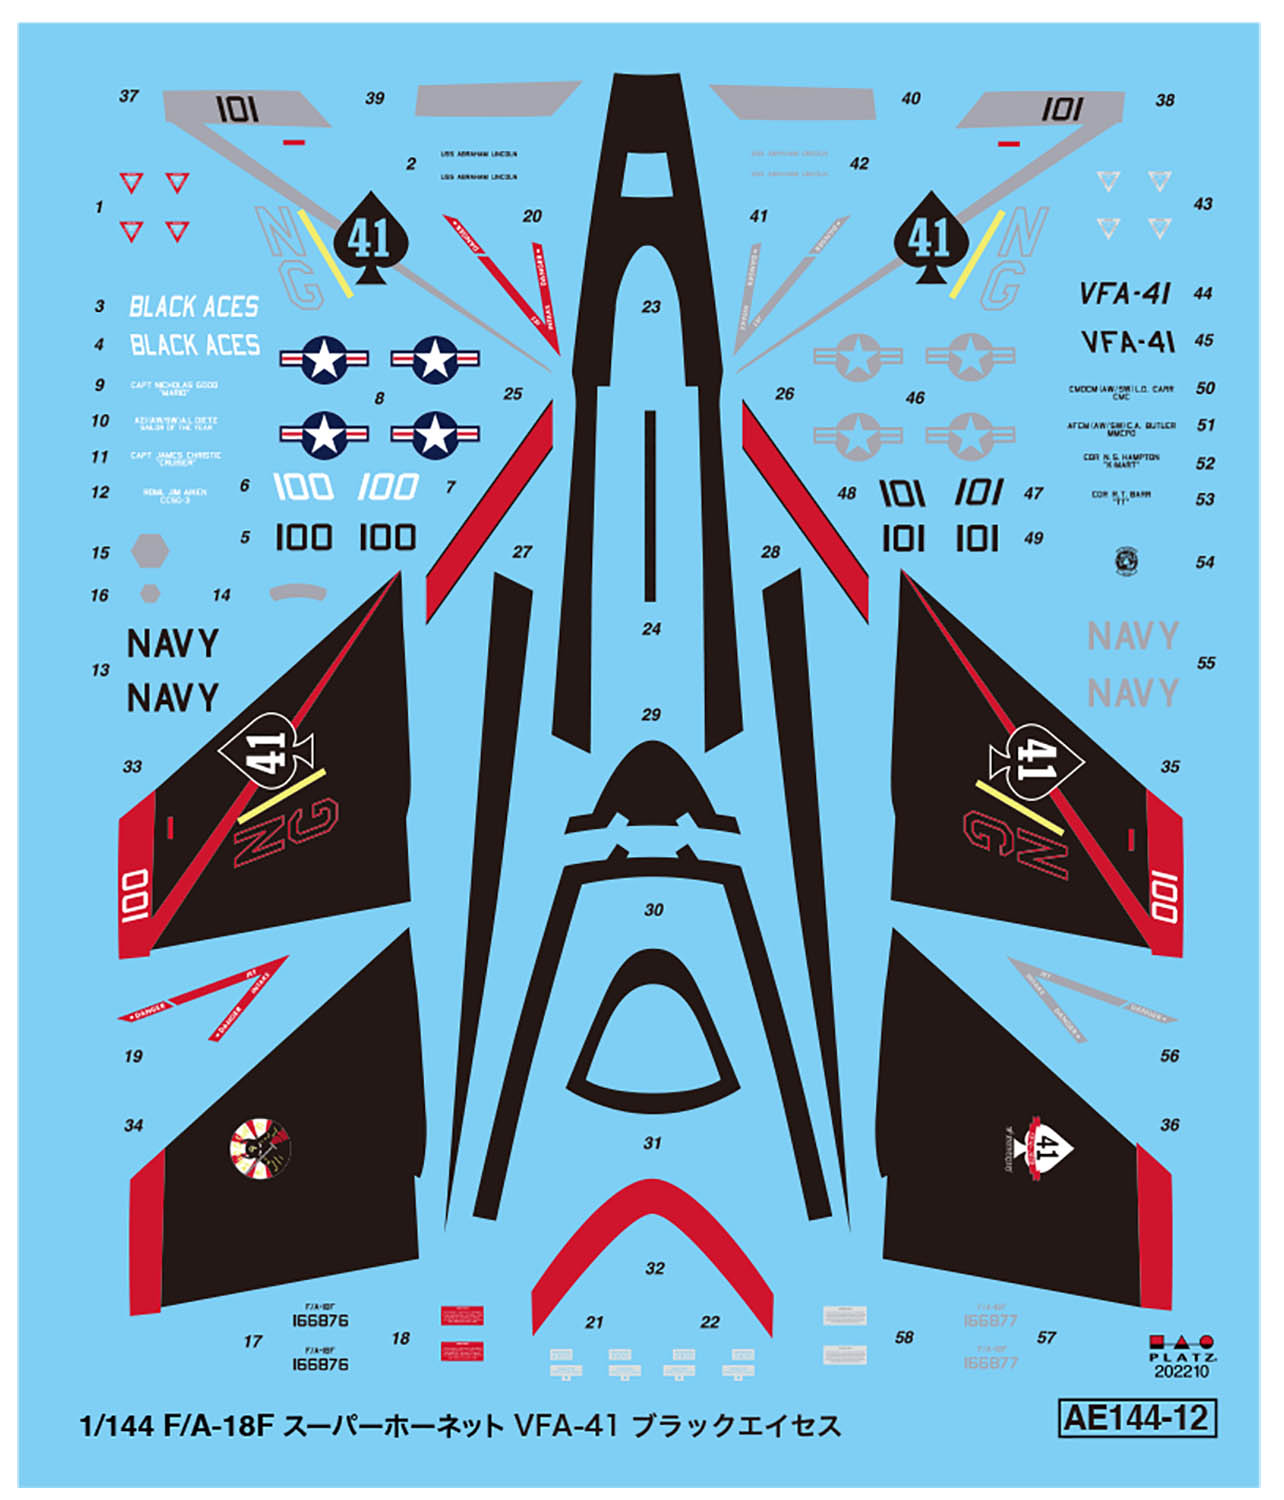 1/144 U.S.Navy Carrier-based Fighter F/A-18F Super Hornet VFA-41